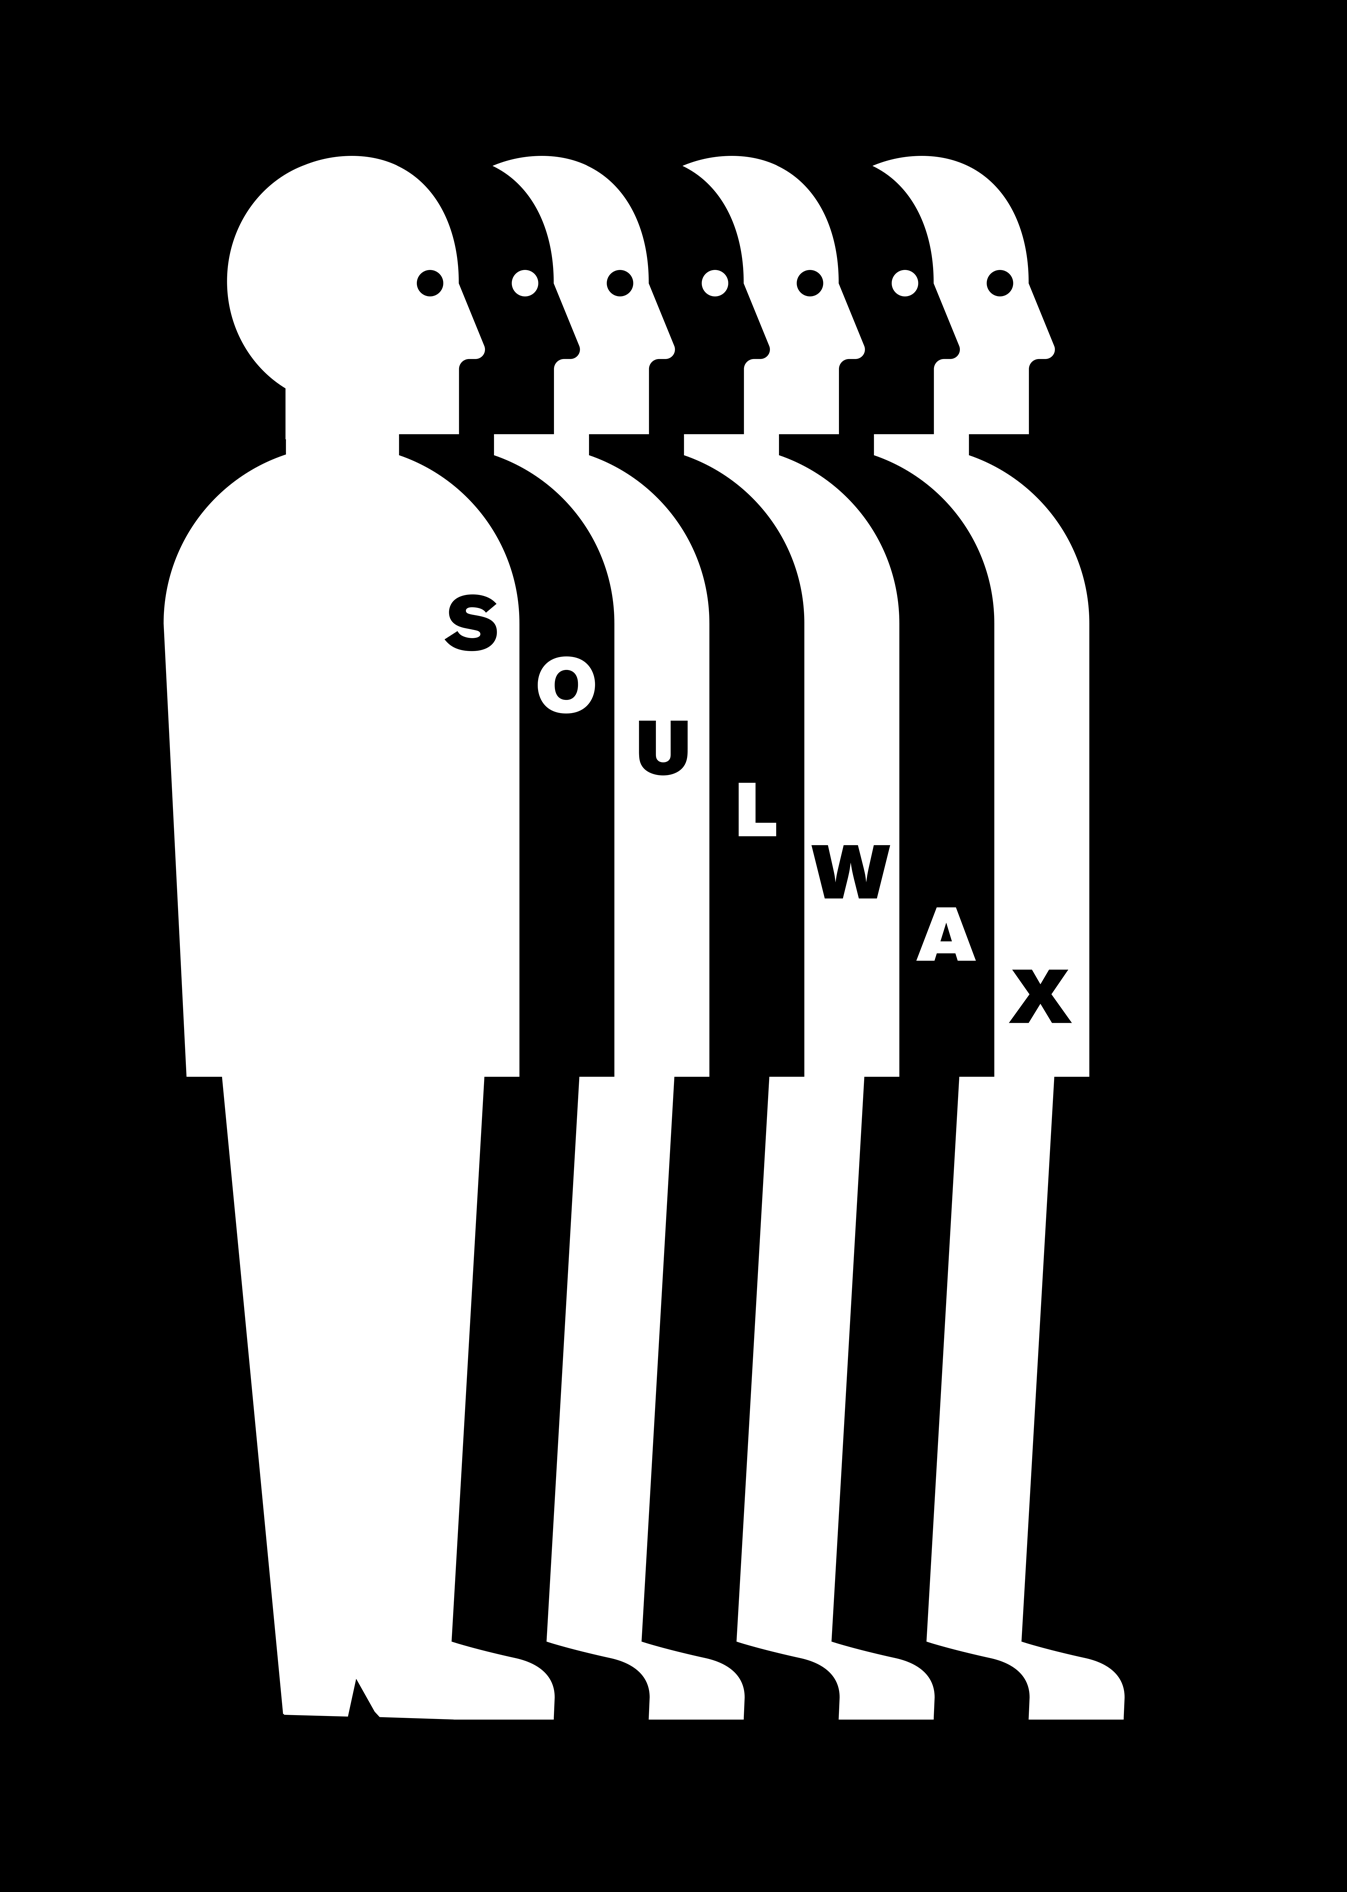 Soulwax logo